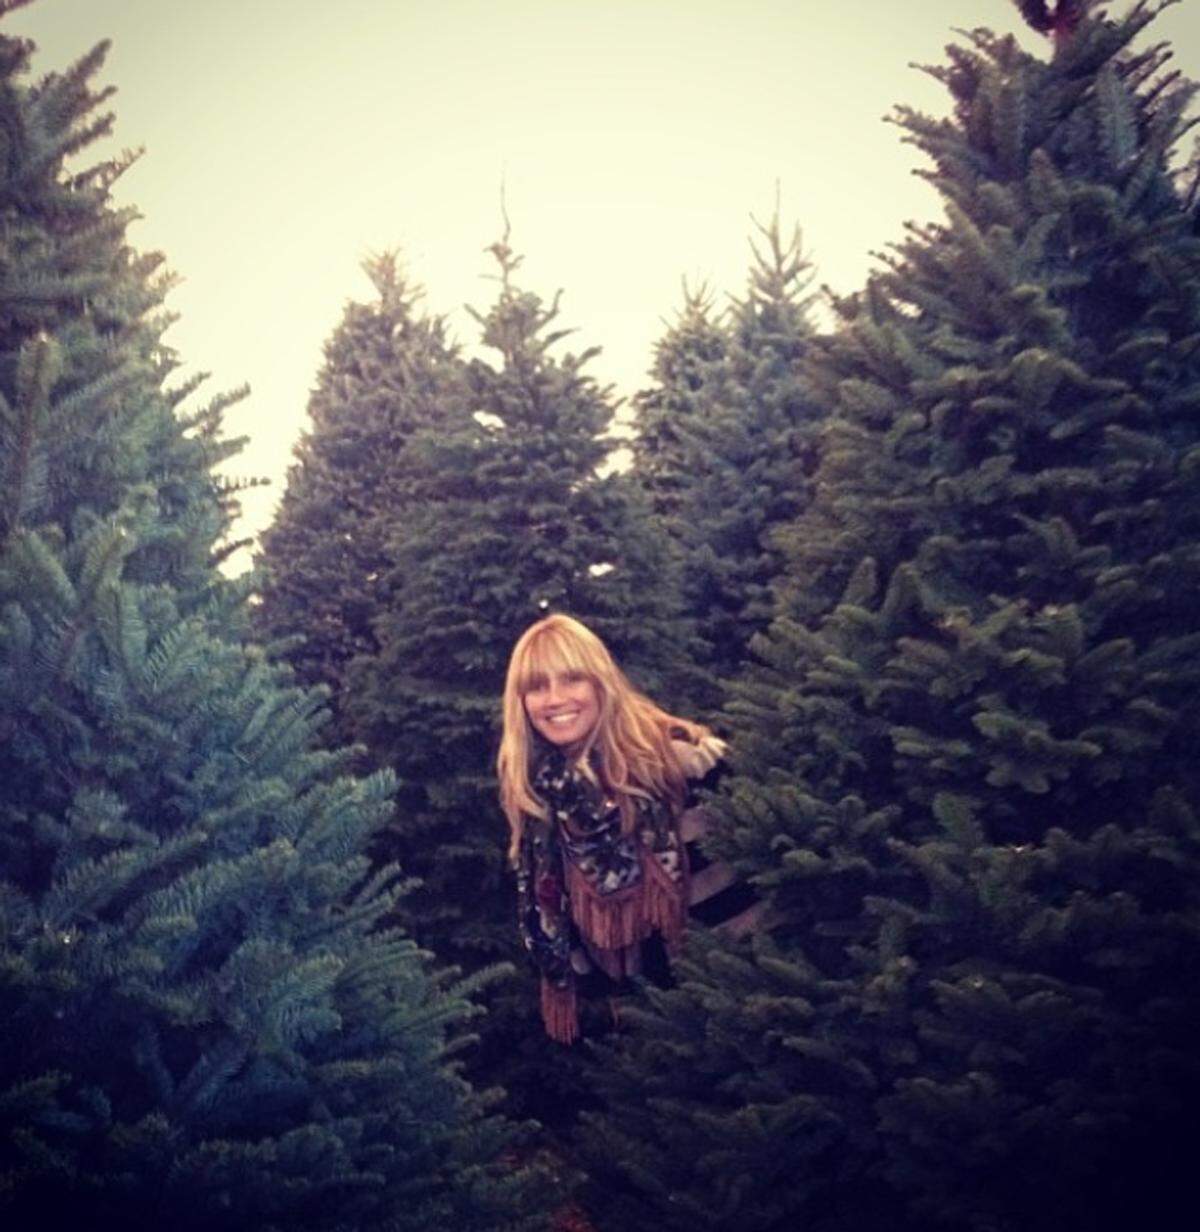 Heidi Klum ist auf der Suche nach dem perfekten Christbaum mit den Tannen auf Tuchfühlung gegangen.